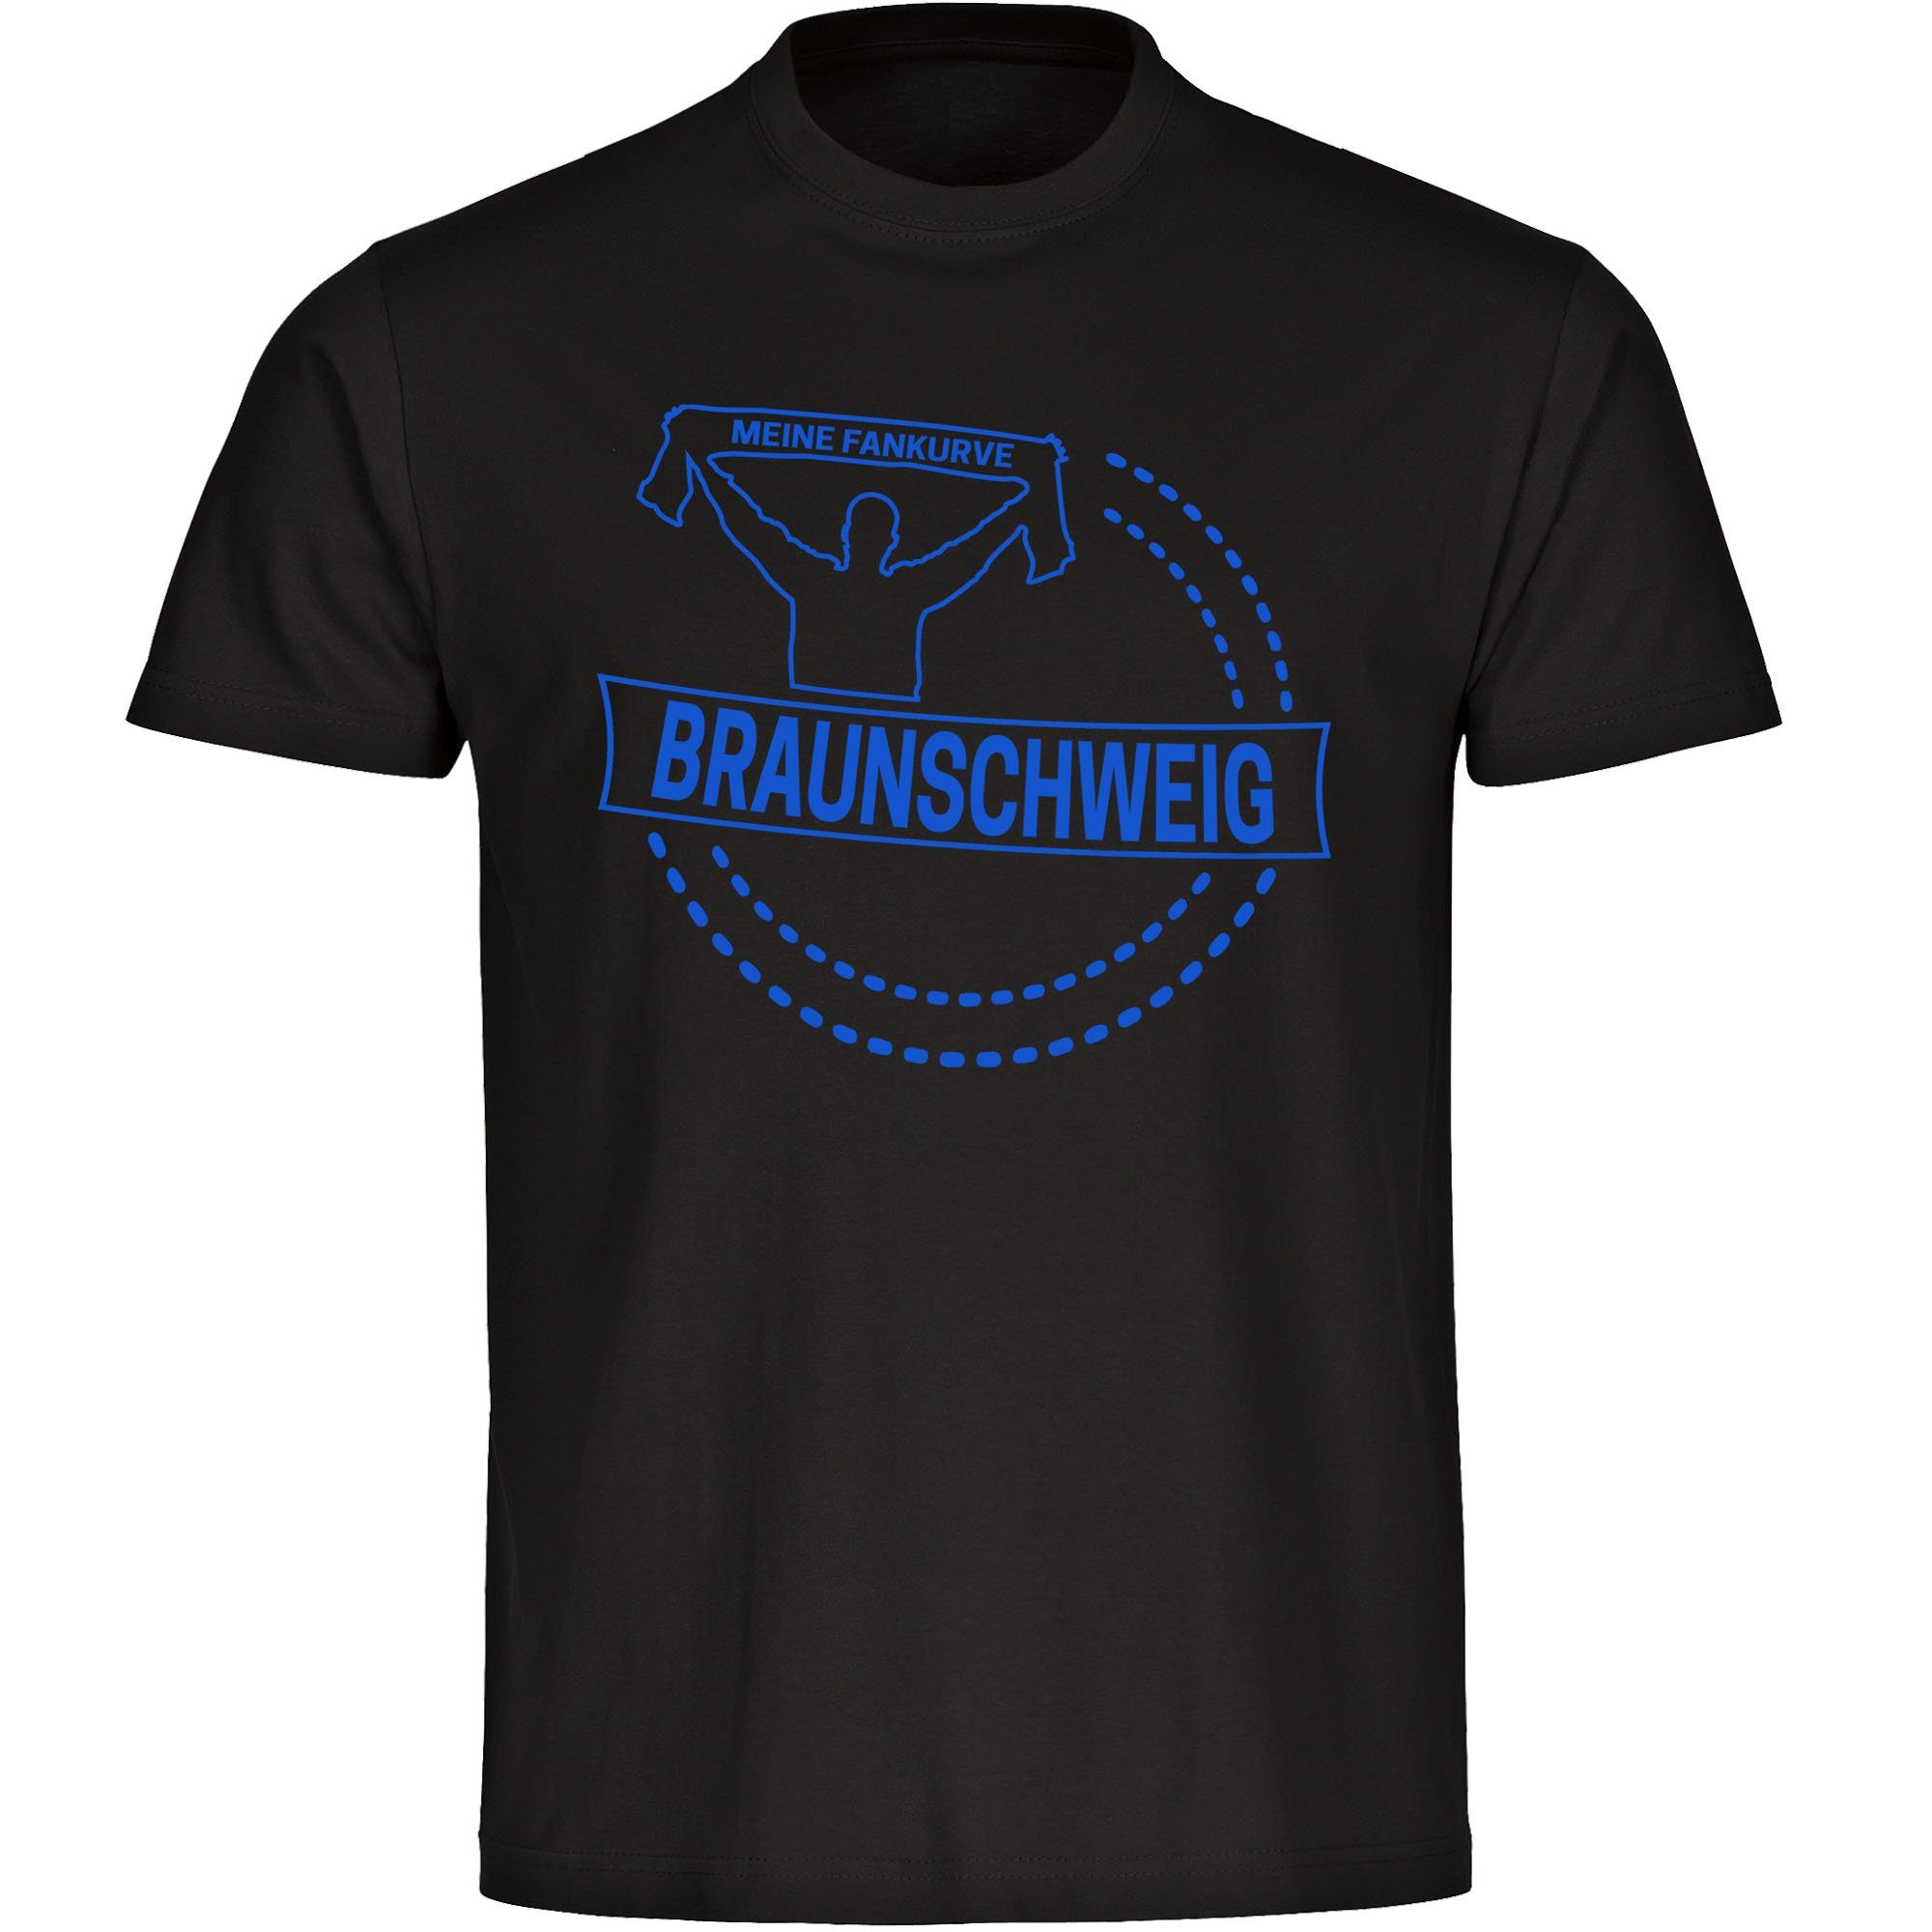 multifanshop T-Shirt Herren Braunschweig - Meine Fankurve - Männer